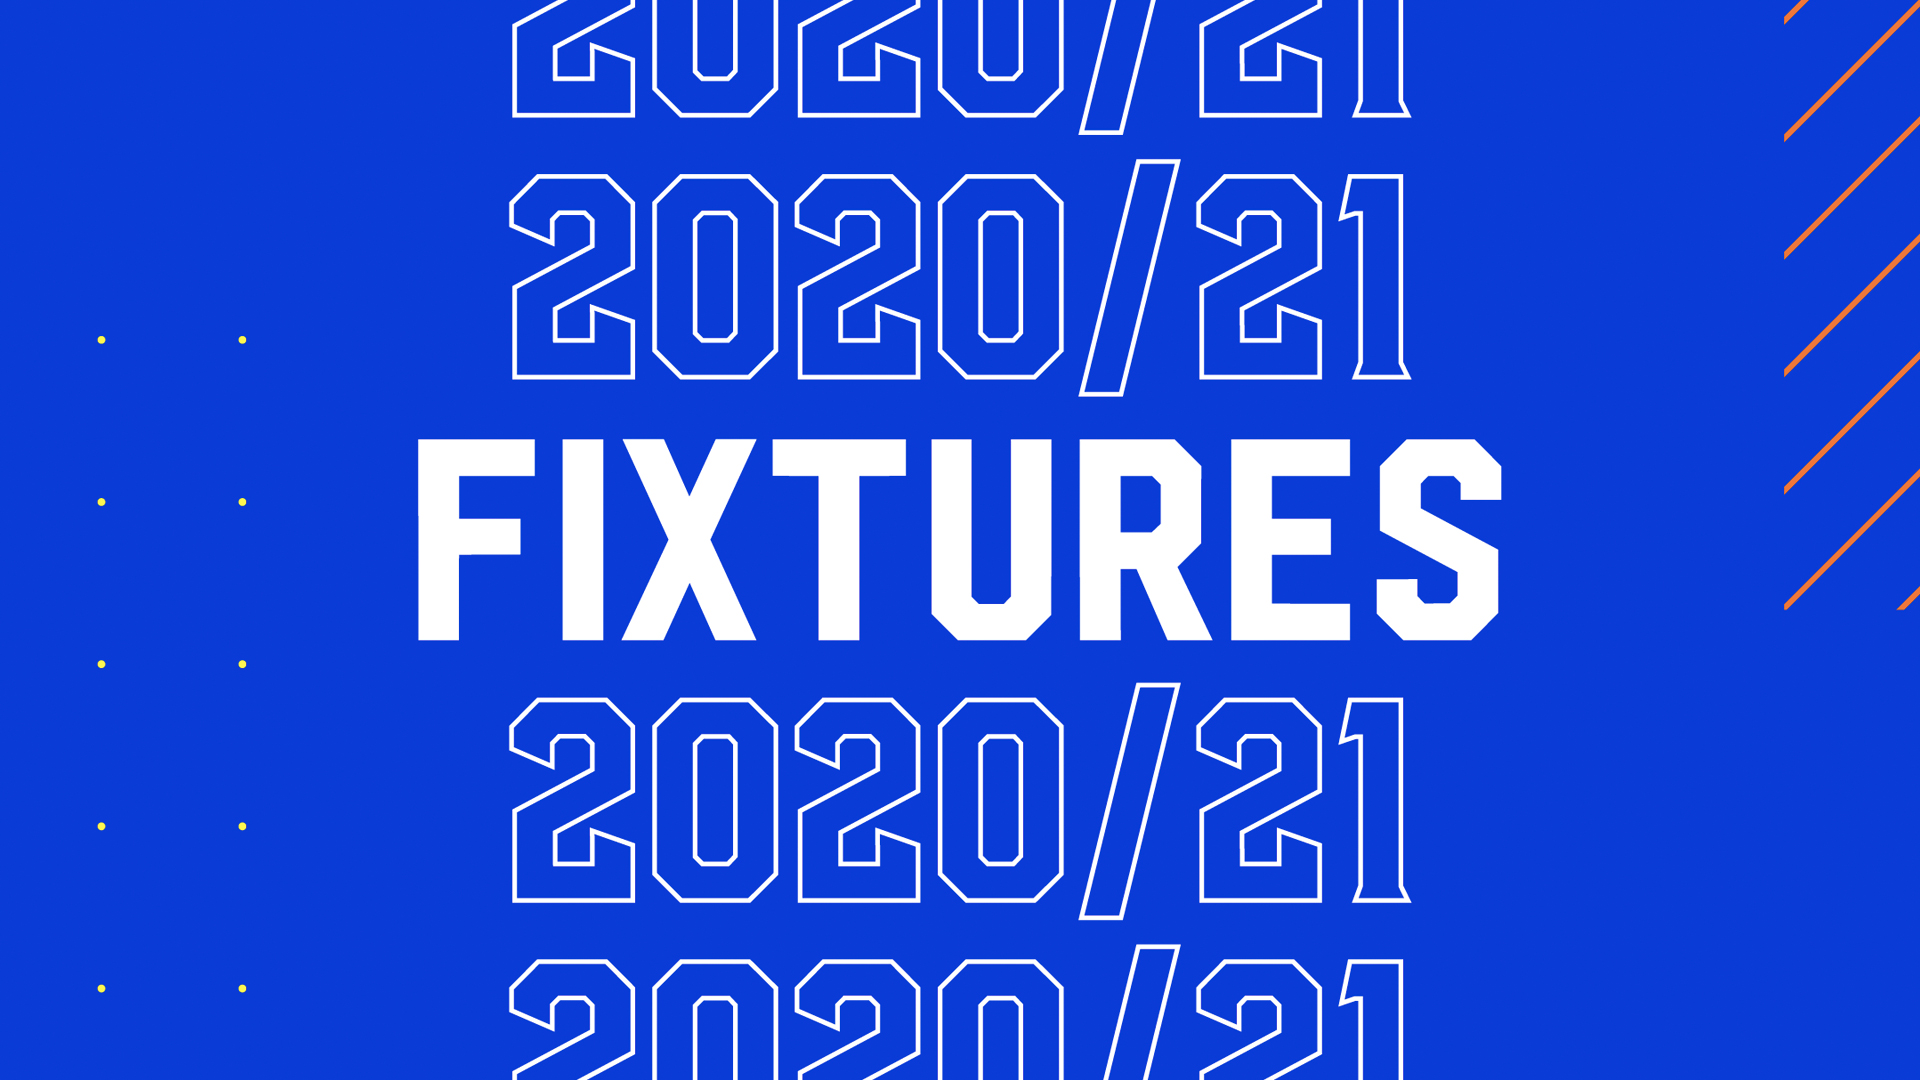 2020/21 Sky Bet Championship Fixtures